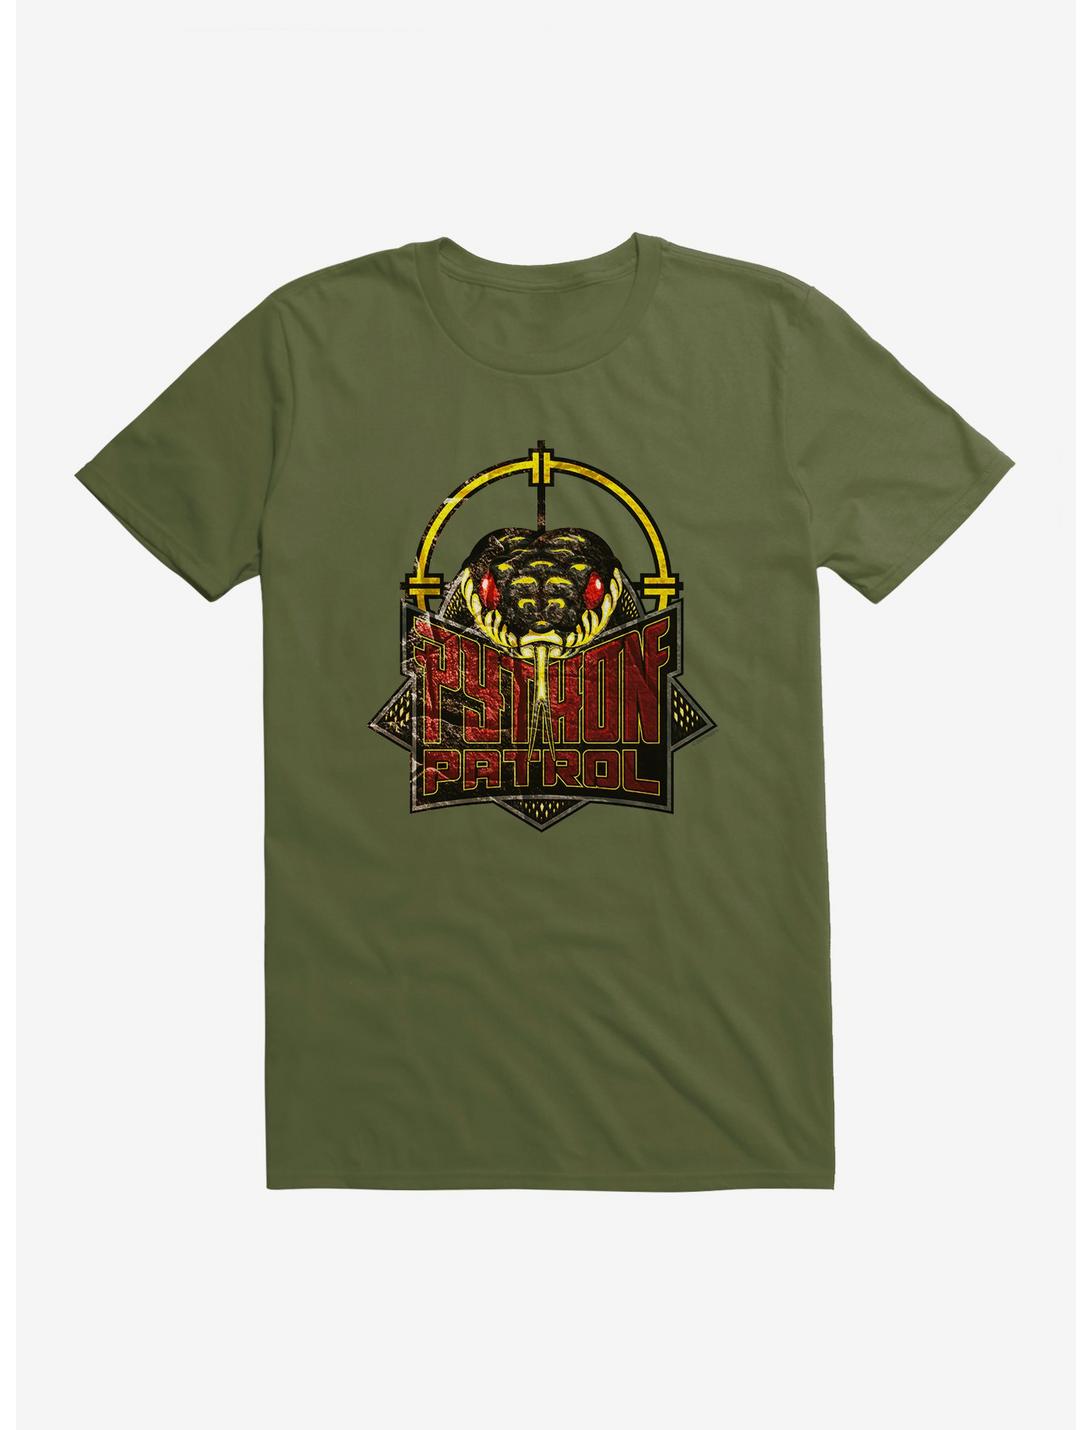 G.I. Joe Python Patrol Badge T-Shirt, , hi-res